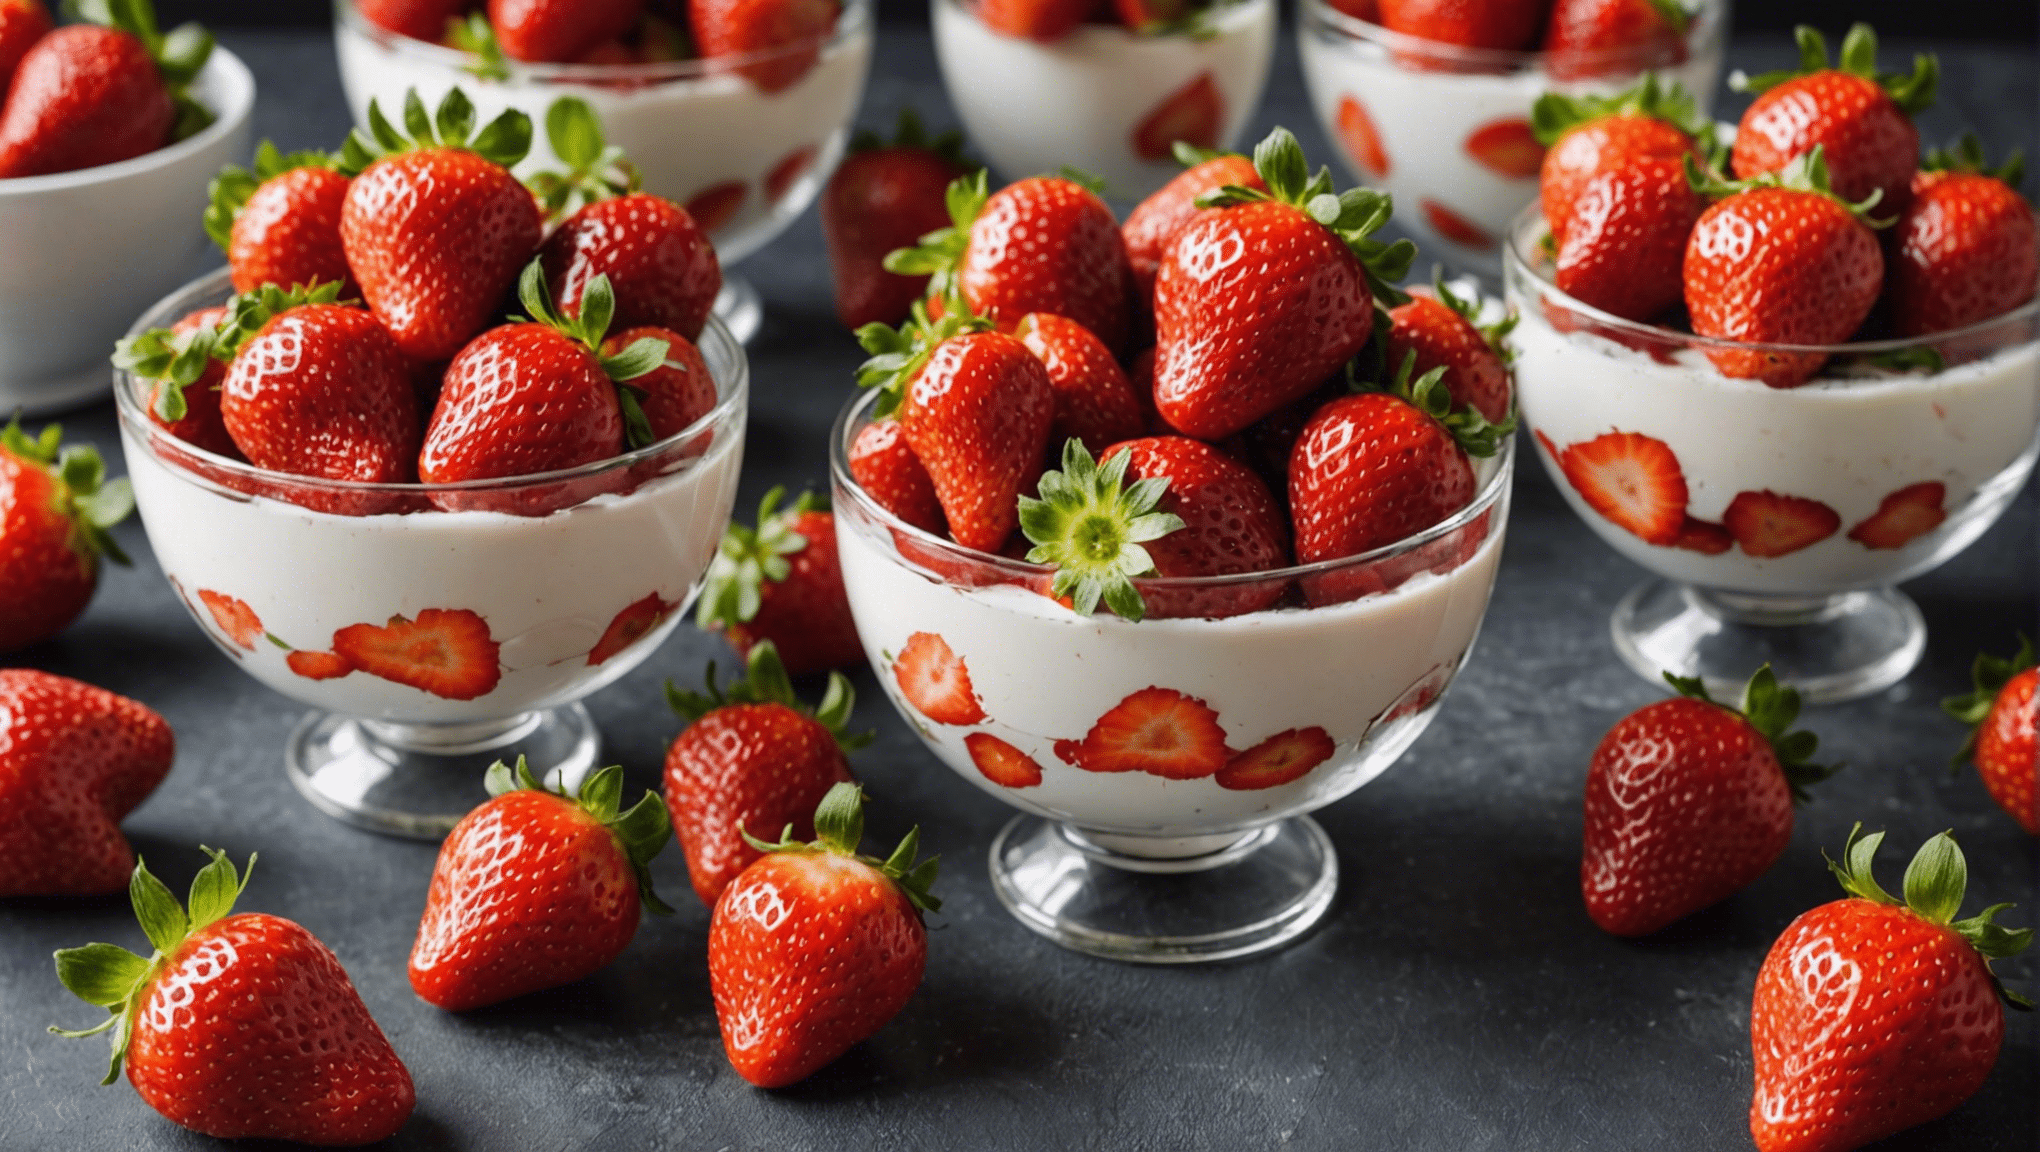 découvrez le secret pour cultiver des fraises parfaites sans maladies avec nos conseils sur les fraisiers.